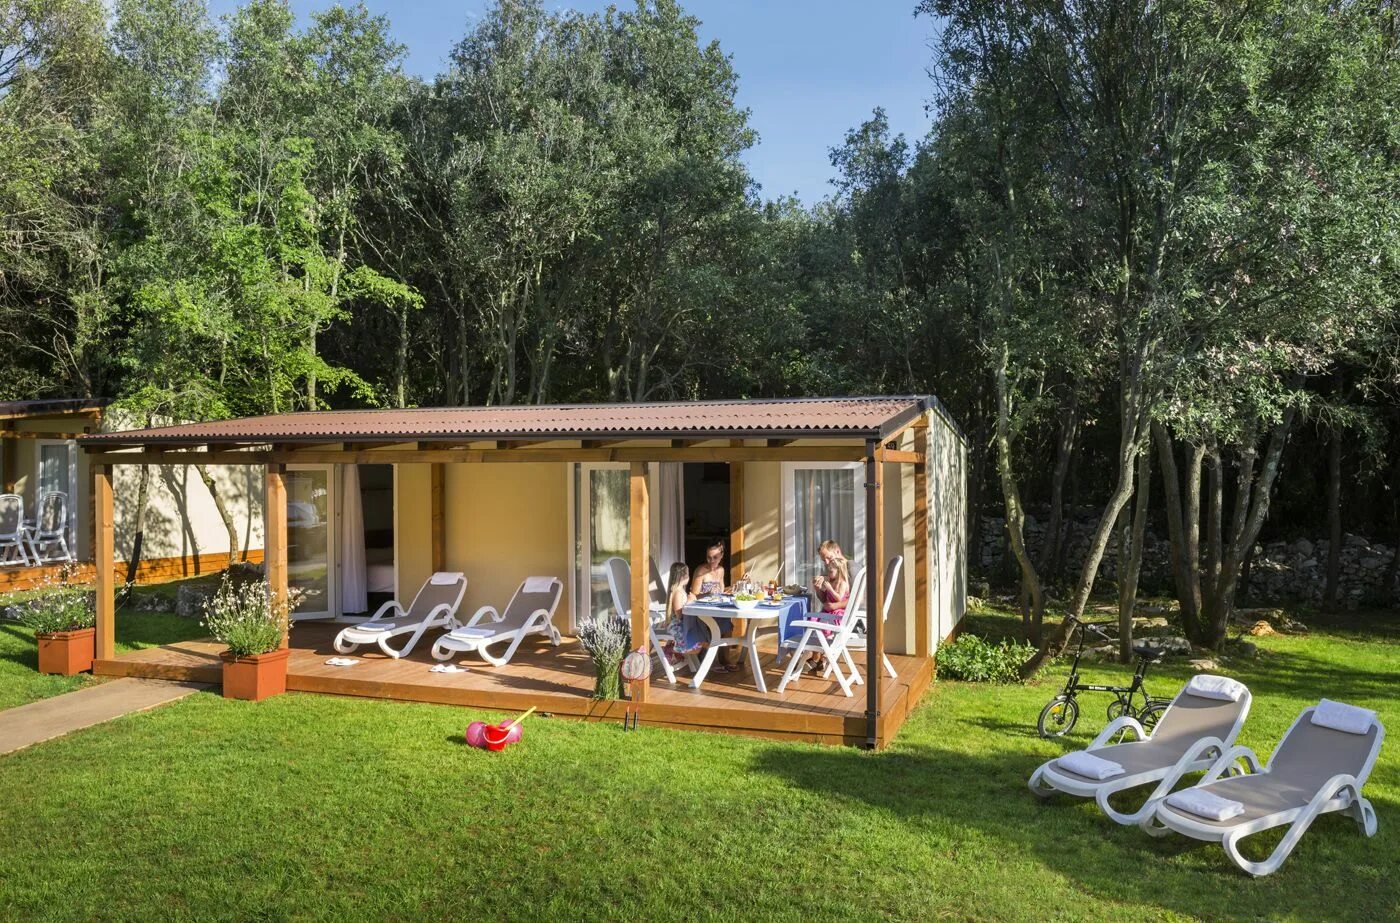 Хорватия кемпинг. Ровинь передвижные дома для отдыха. Camping Polari Rovinj Istria Croatia fkk. Camping home